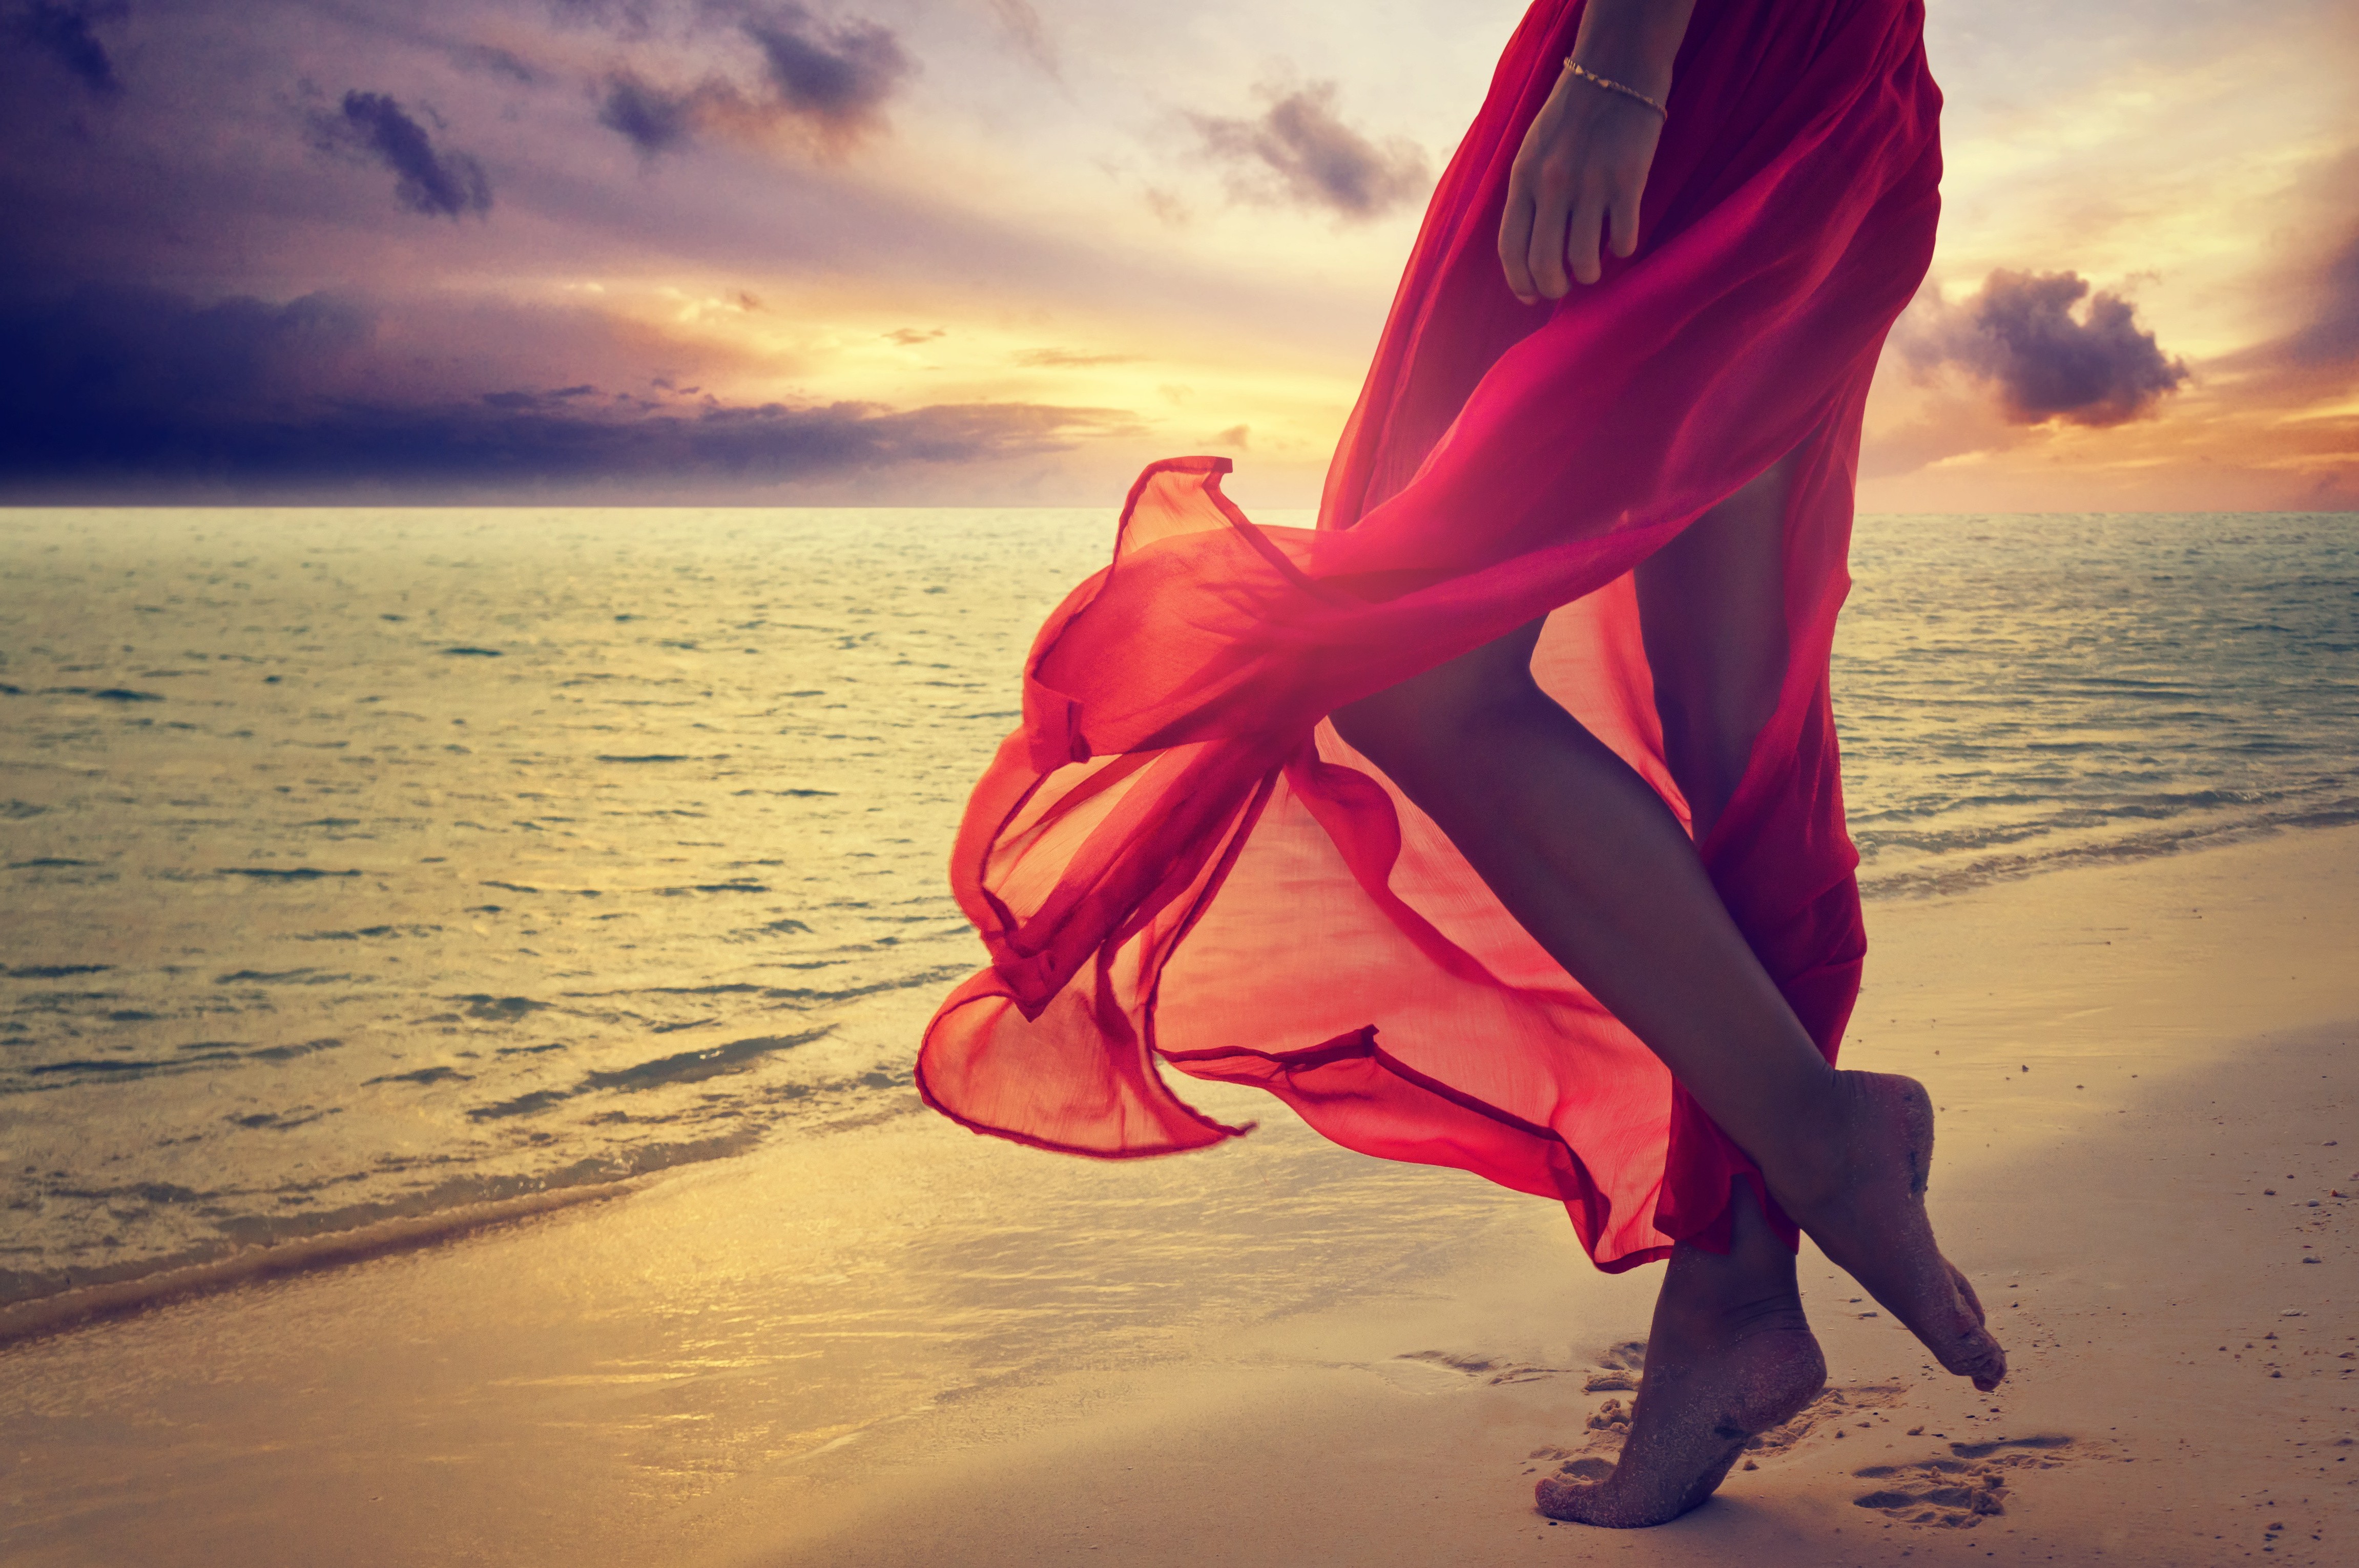 Nature Summer Sea Sunset Red Dress Beach Legs Women Soles Feet Wallpapers Hd Desktop